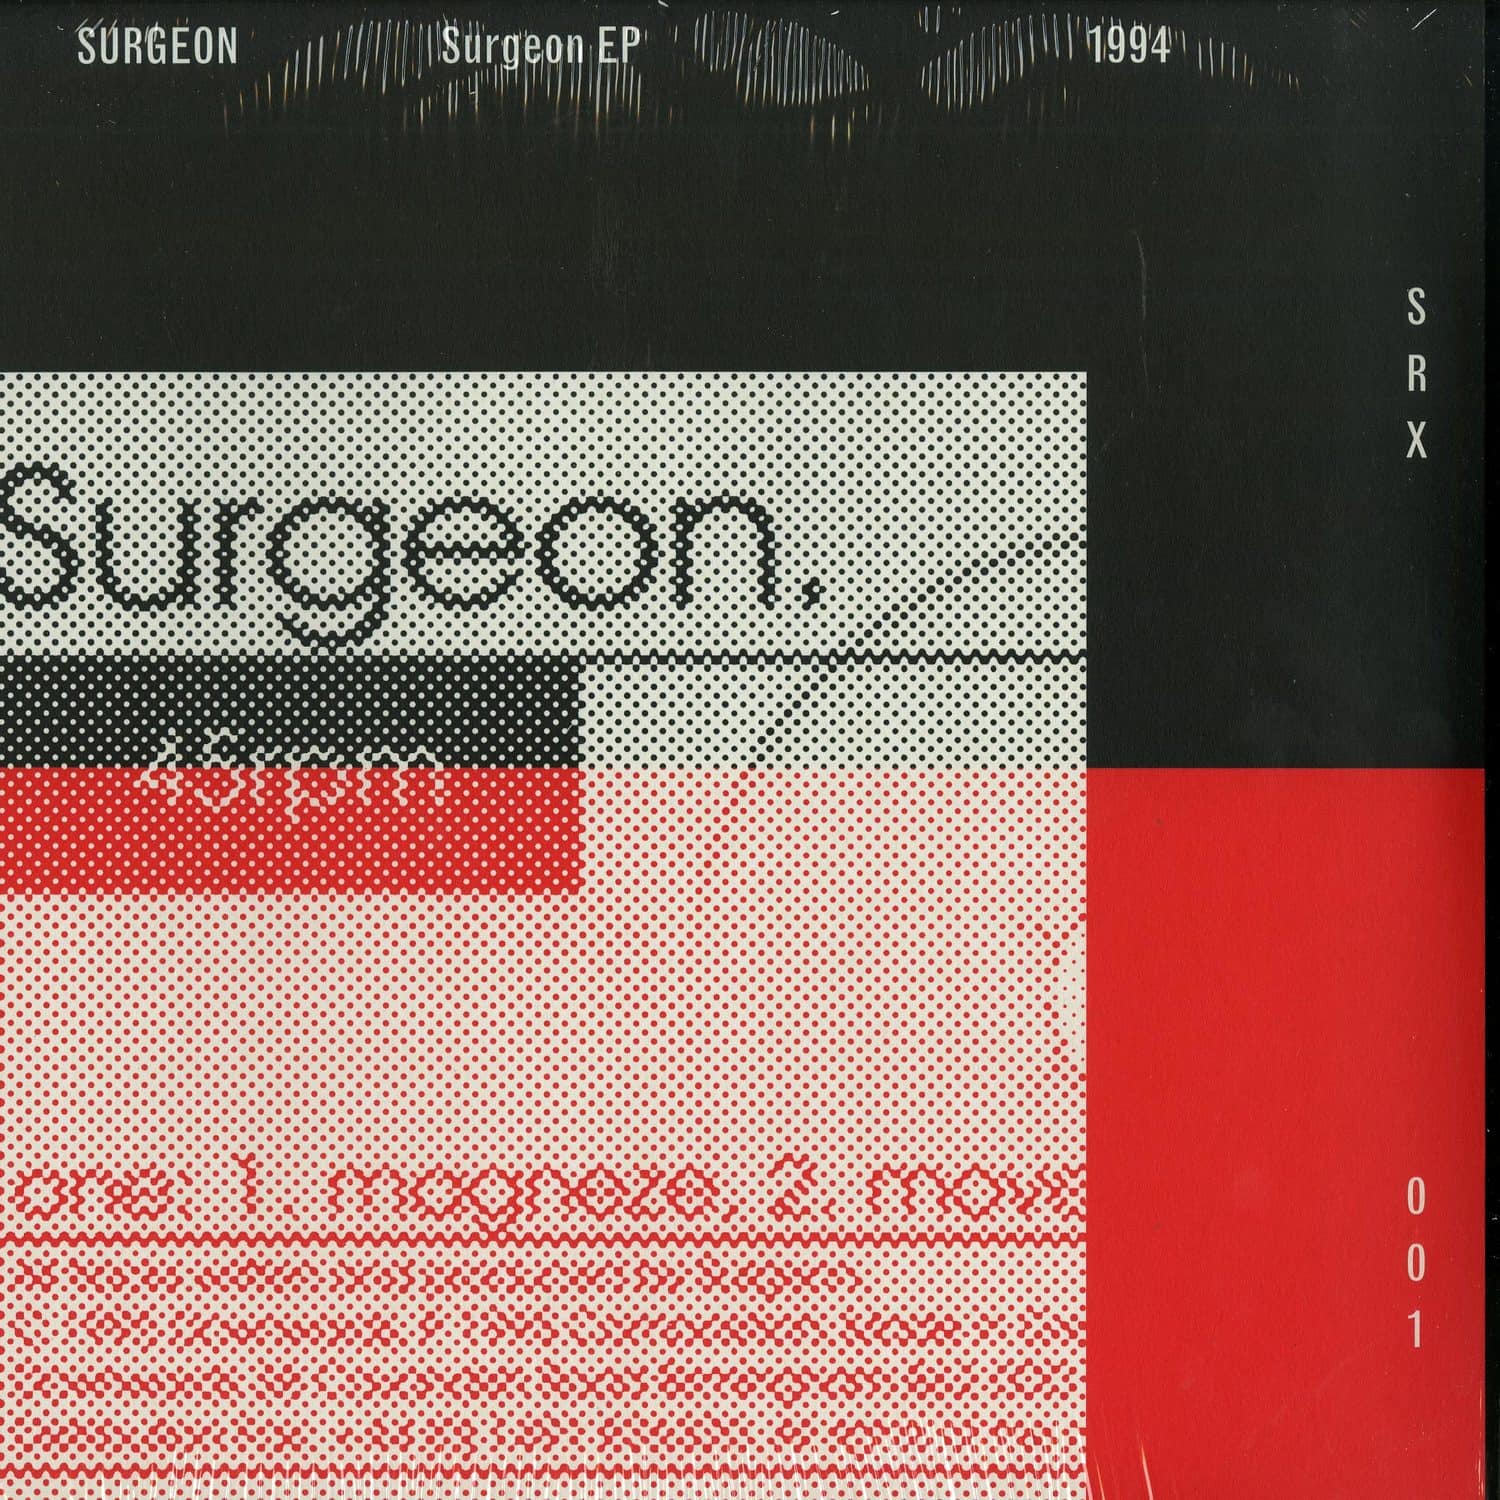 Surgeon - SURGEON EP 